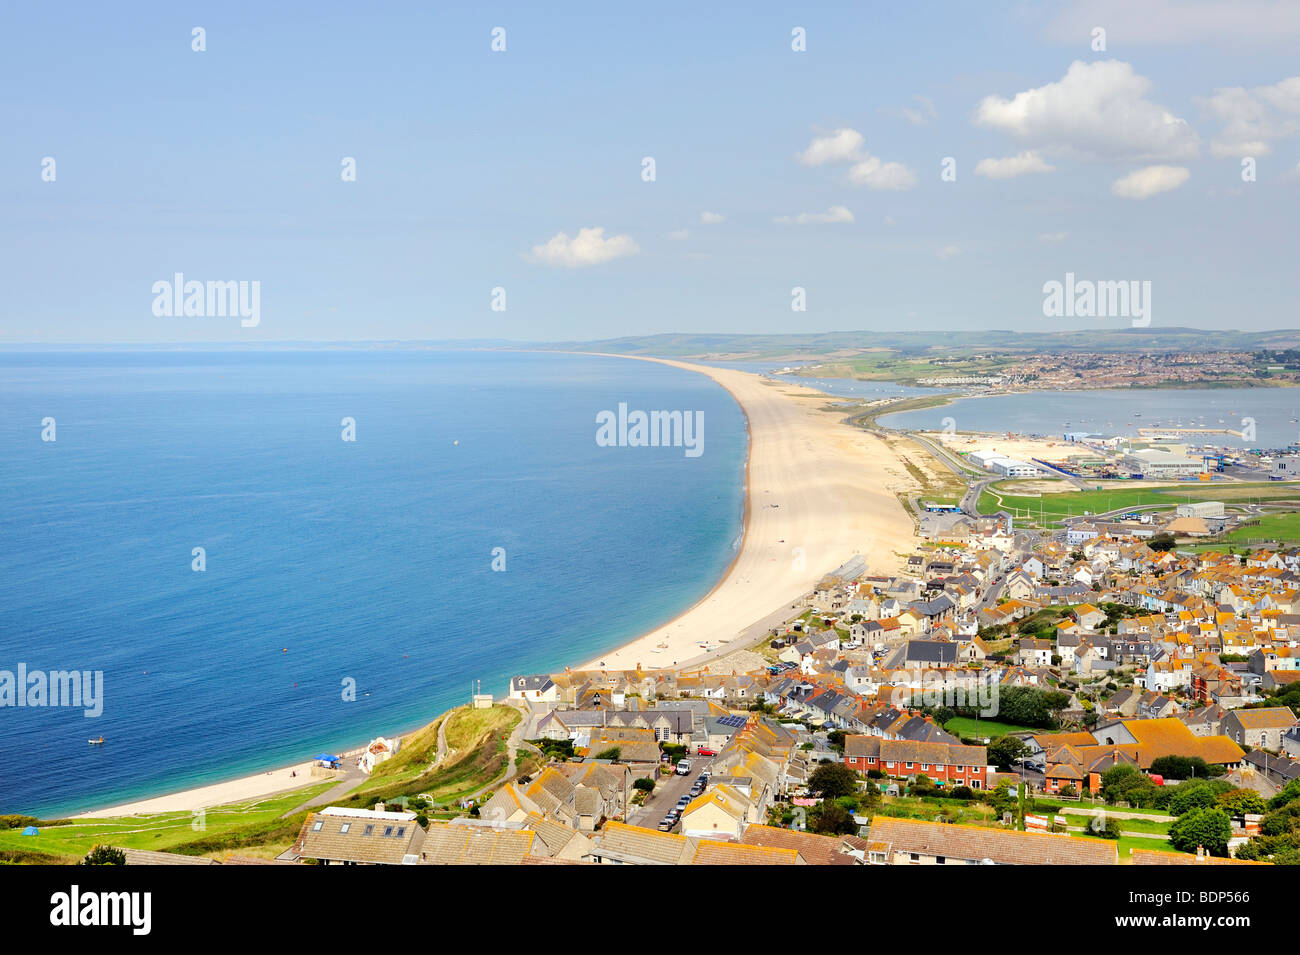 Vue depuis l'Île de Portland sur la plage de Chesil et la ville de Fortuneswell, Dorset, Angleterre, Royaume-Uni, Europe Banque D'Images